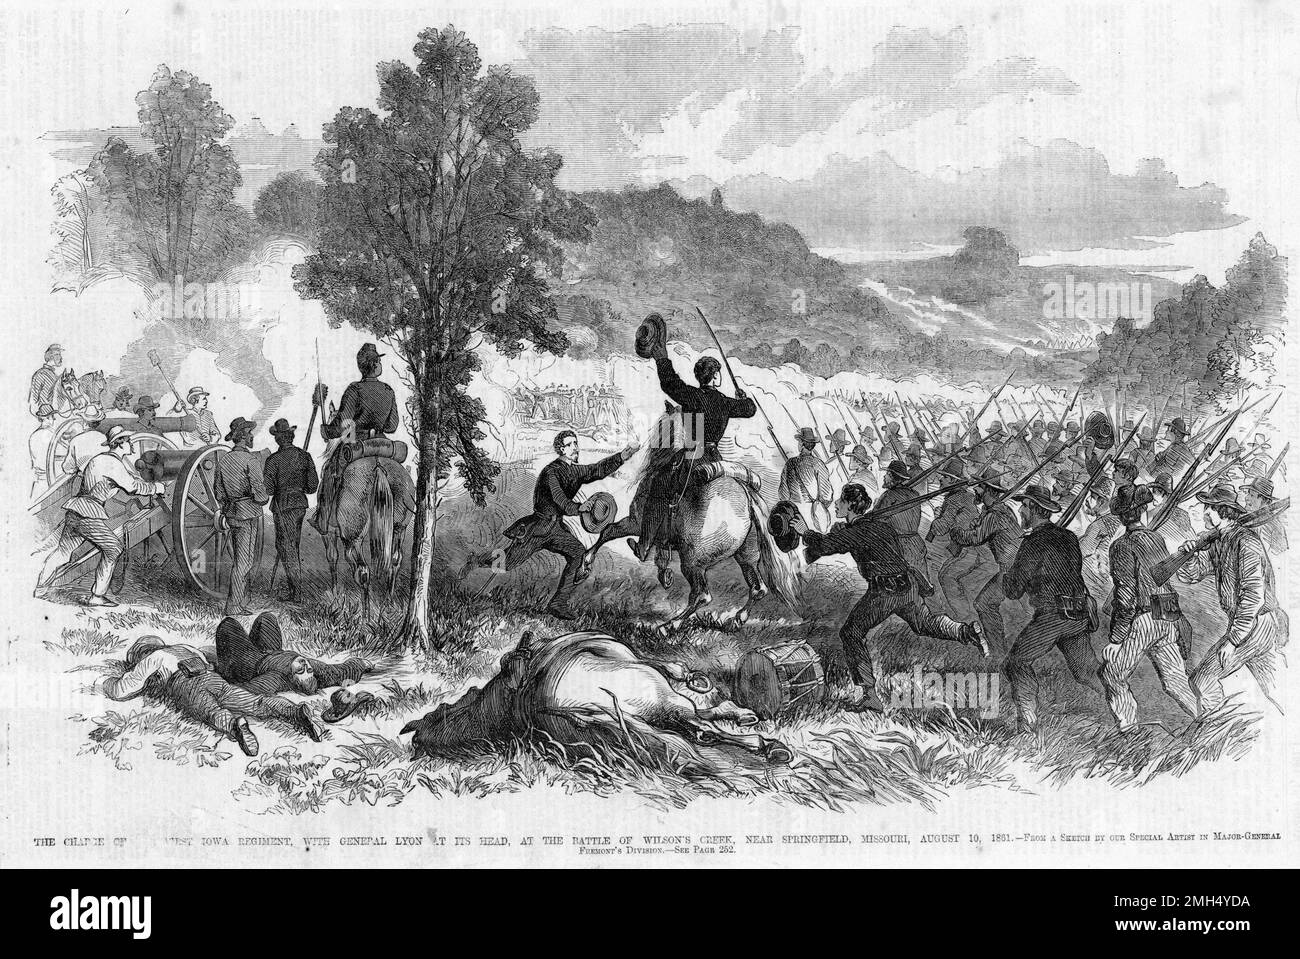 Die Schlacht von Wilson's Creek, auch bekannt als die Schlacht von Oak Hills, war eine große Schlacht in den ersten Monaten des Amerikanischen Bürgerkriegs, der am 10. August 1861 stattfand. Die Unionisten unter Nathaniel Lyon und Samuel D. Sturgis verloren an die Konföderierten unter Sterling Price und Benjamin McCulloch. General Lyon wurde während des Kampfes getötet. Sein Bild zeigt General Lyon als Anführer einer Kavallerie. Stockfoto